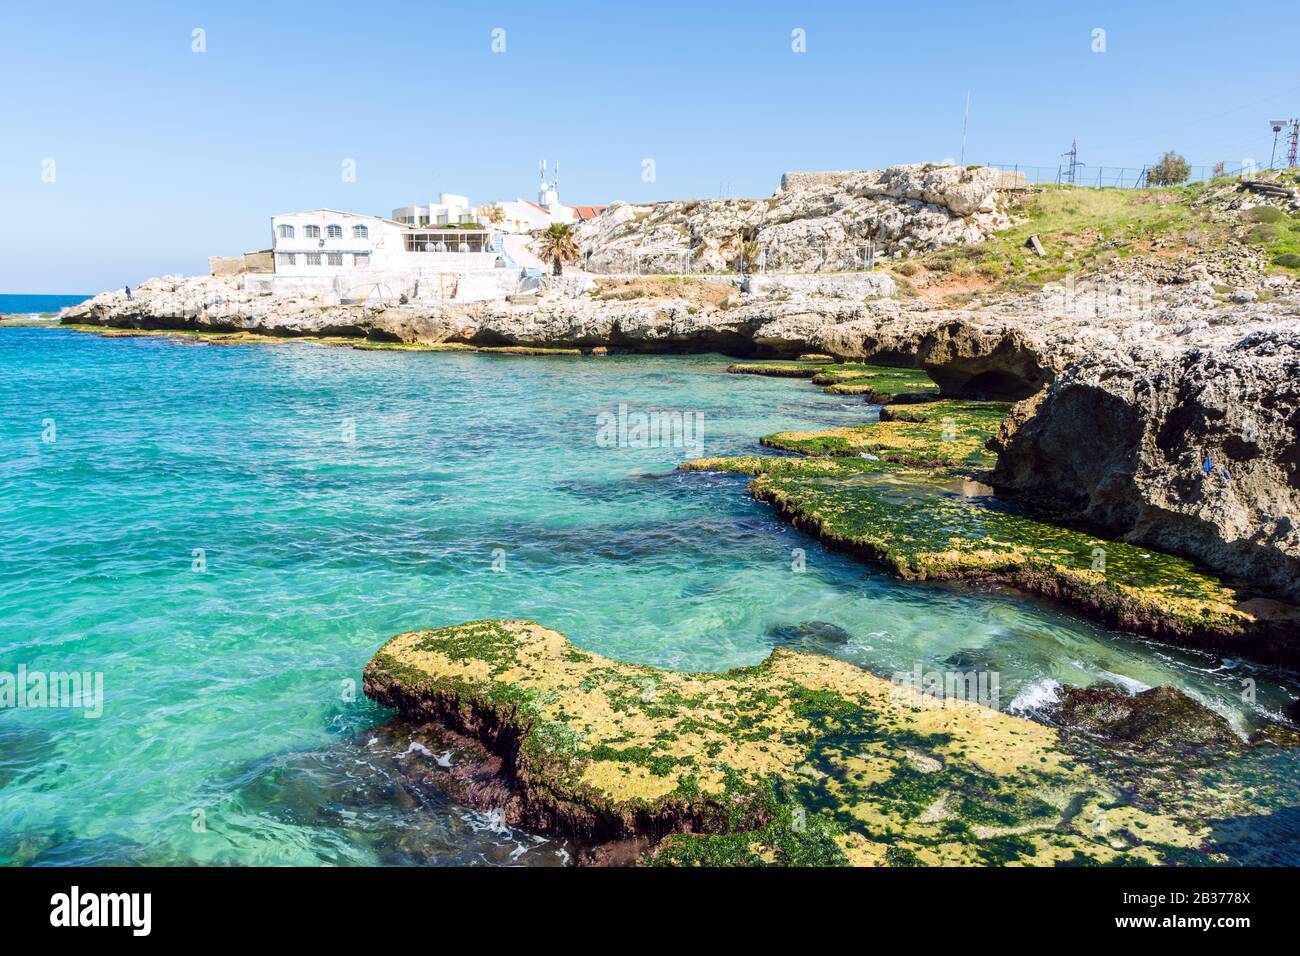 Anfeh, ville côtière sur la mer Méditerranée, Liban Banque D'Images